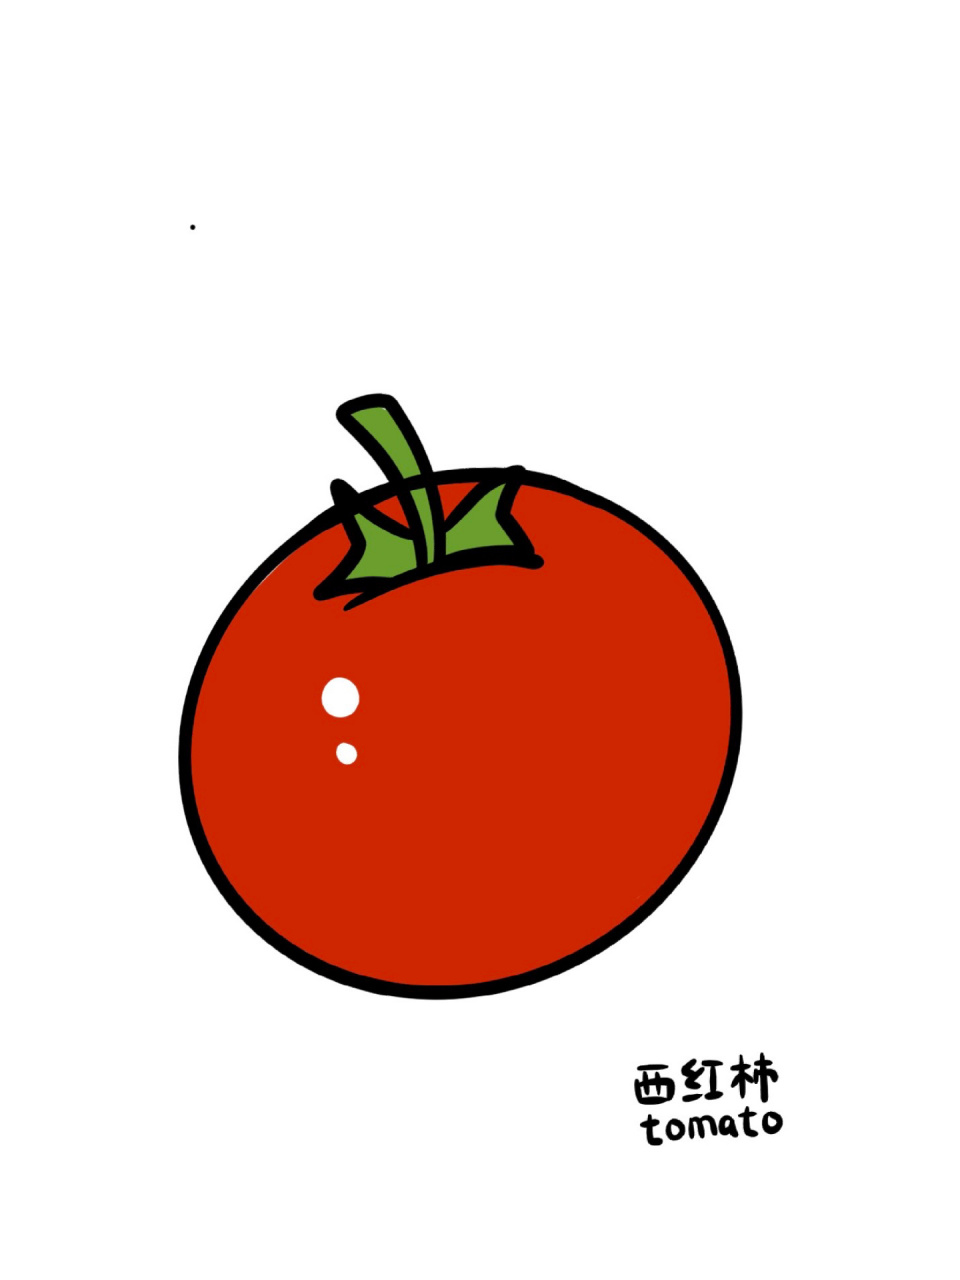 蔬菜植物系列9799简笔画:酸甜西红柿17 今日份打卡:酸酸甜甜的